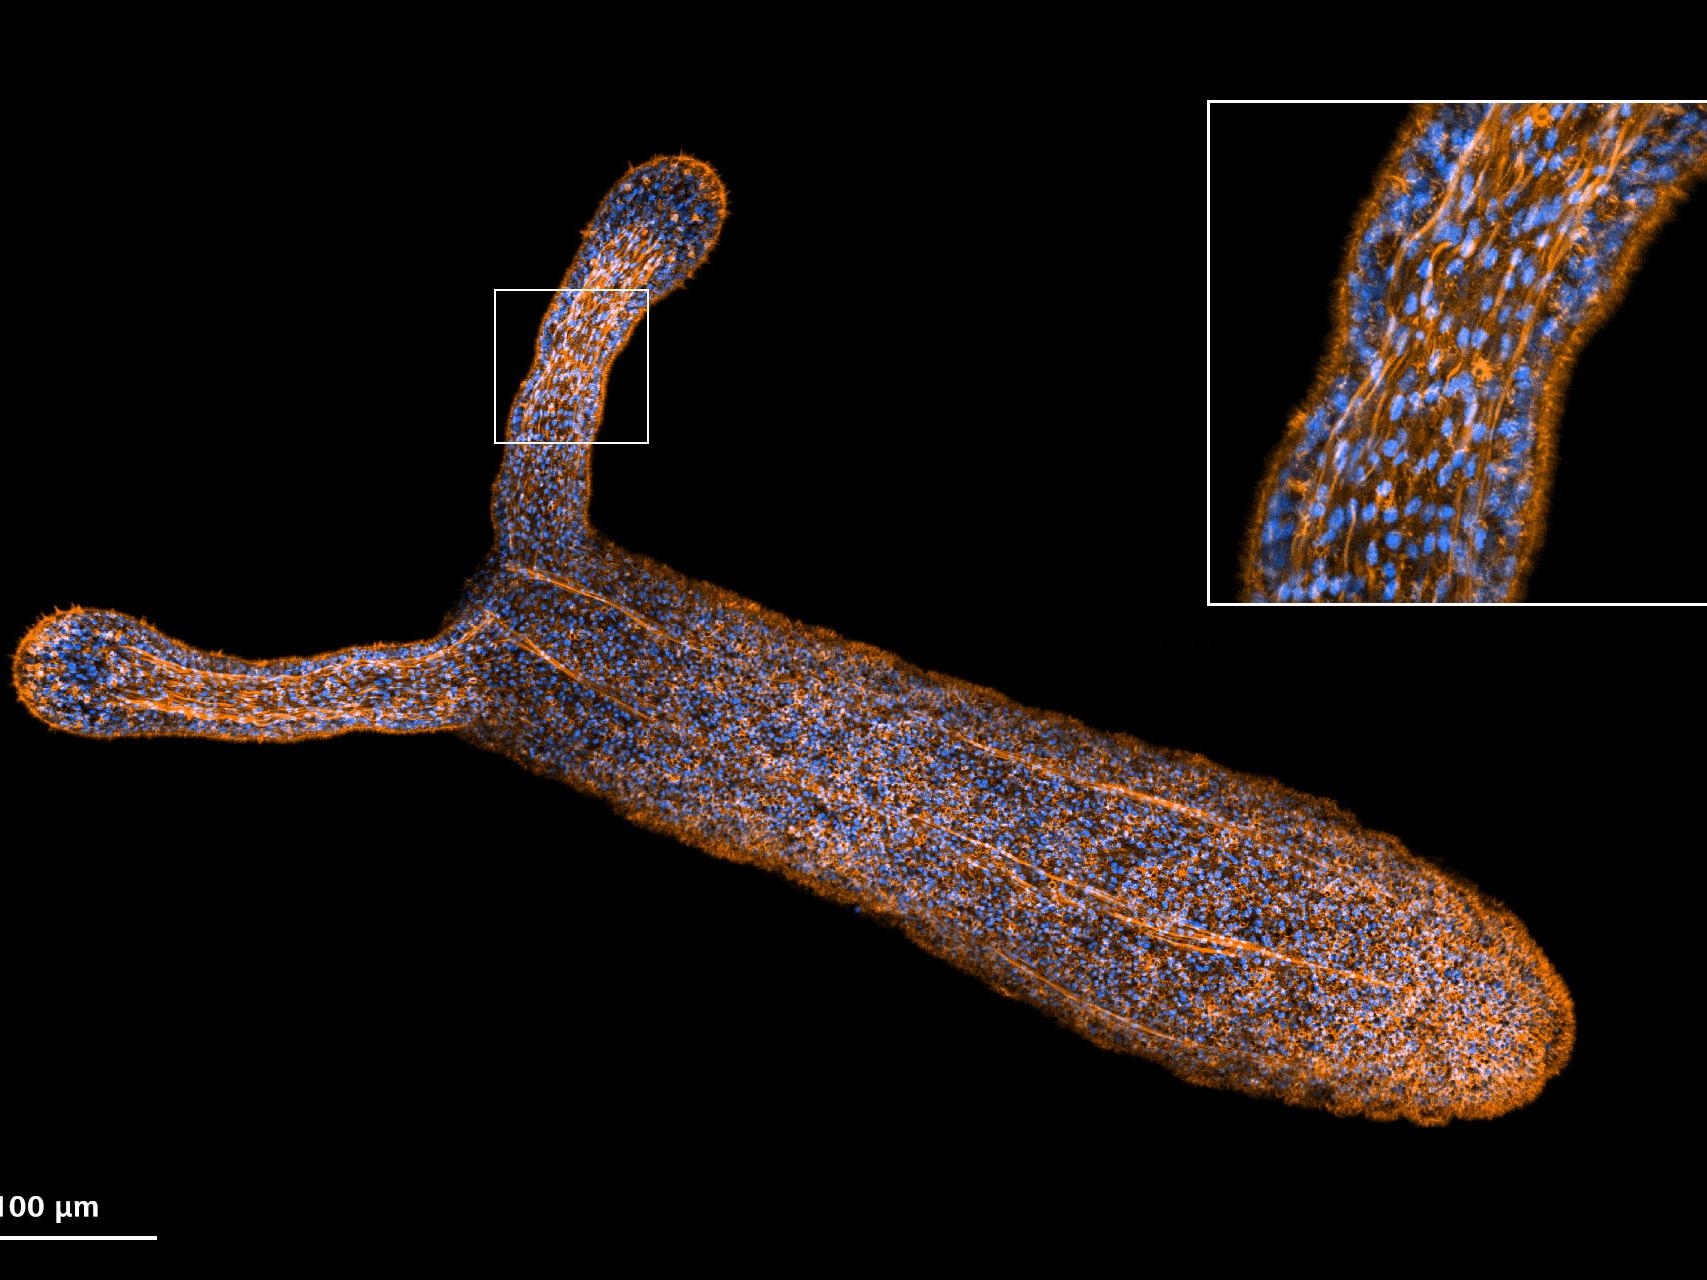 Anémona de mar estrella (Nematostella vectensis) captada con el modo de alta sensibilidad de Airyscan 2.